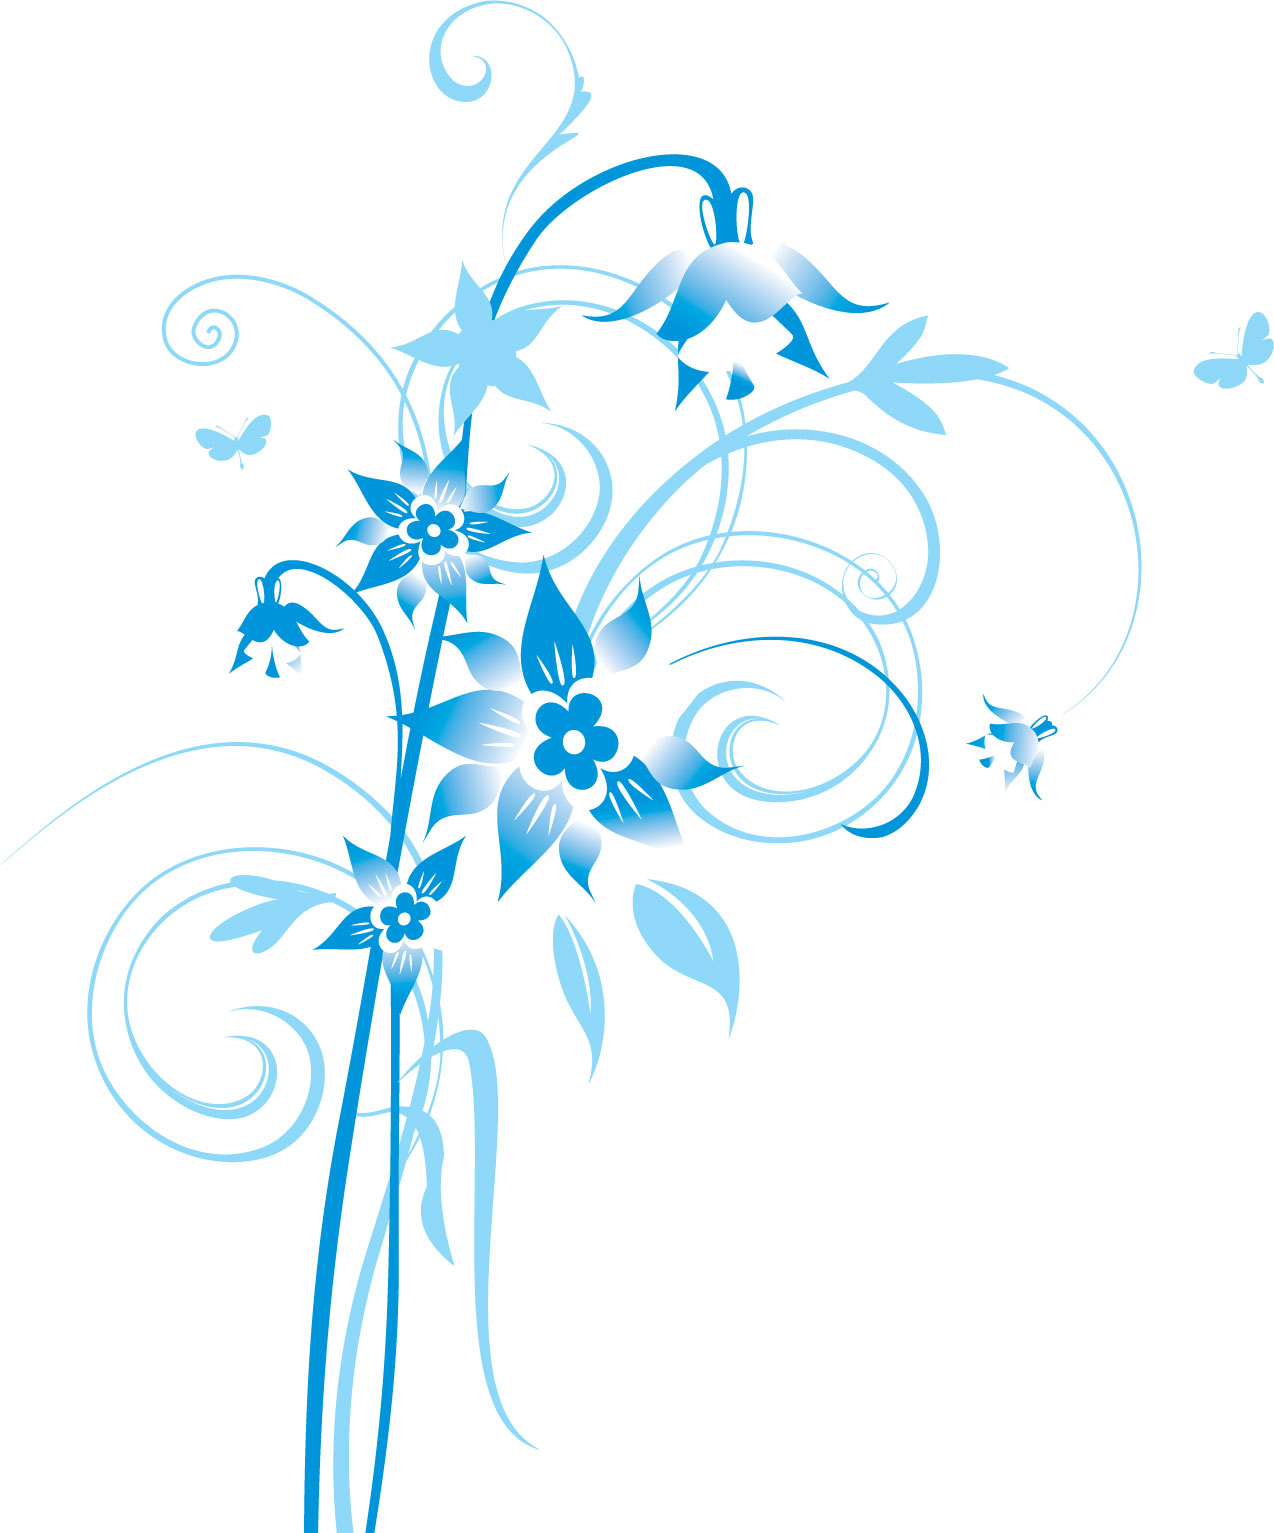 ポップでかわいい花のイラスト フリー素材 No 178 青 水色 蝶